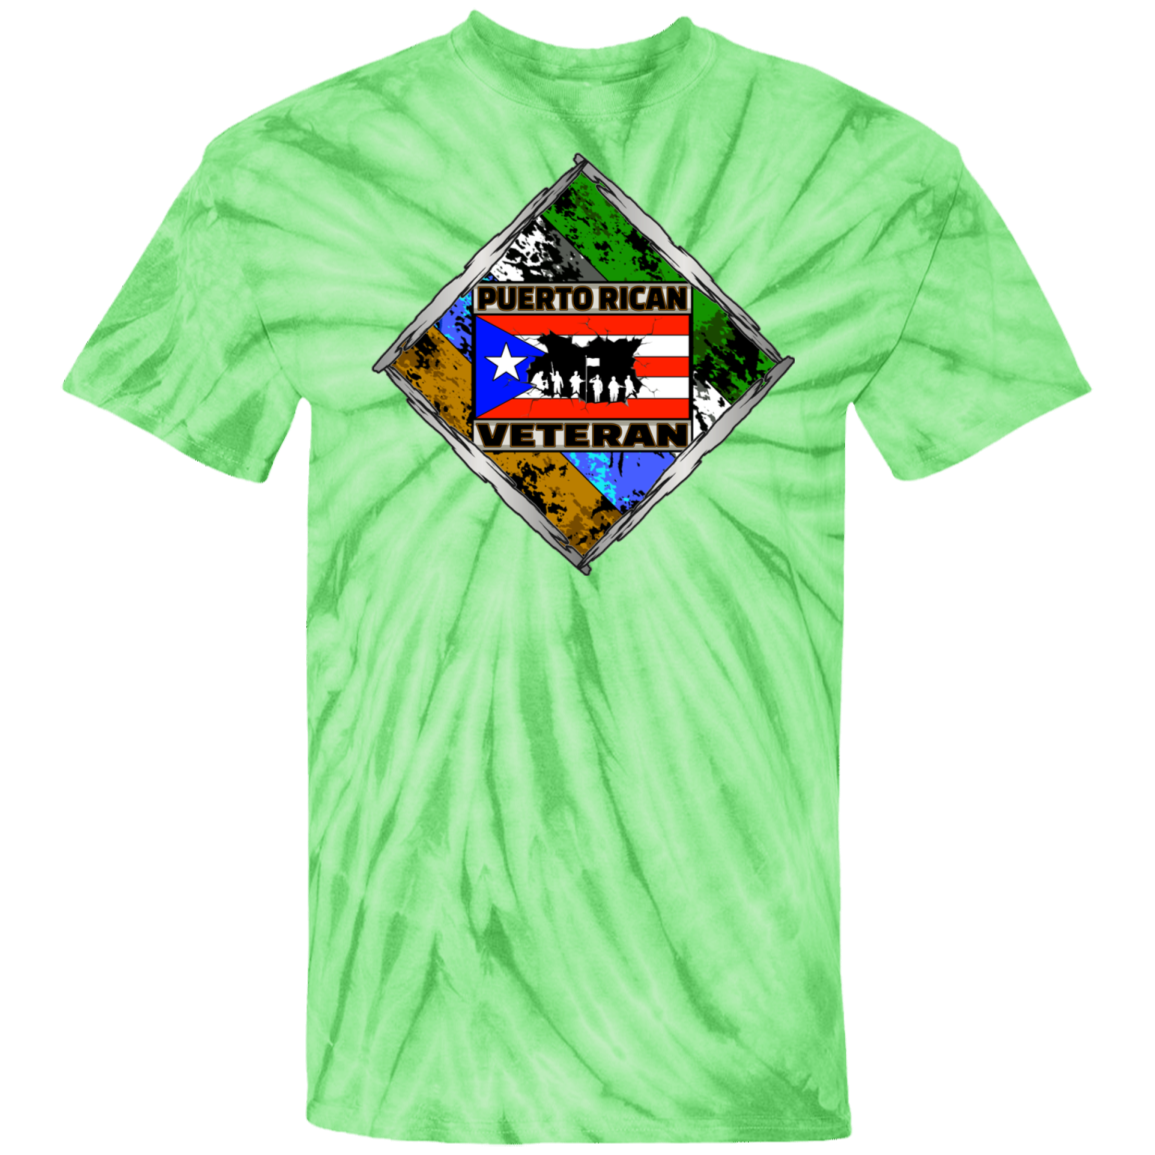 PR Veteran 100% Cotton Tie Dye T-Shirt